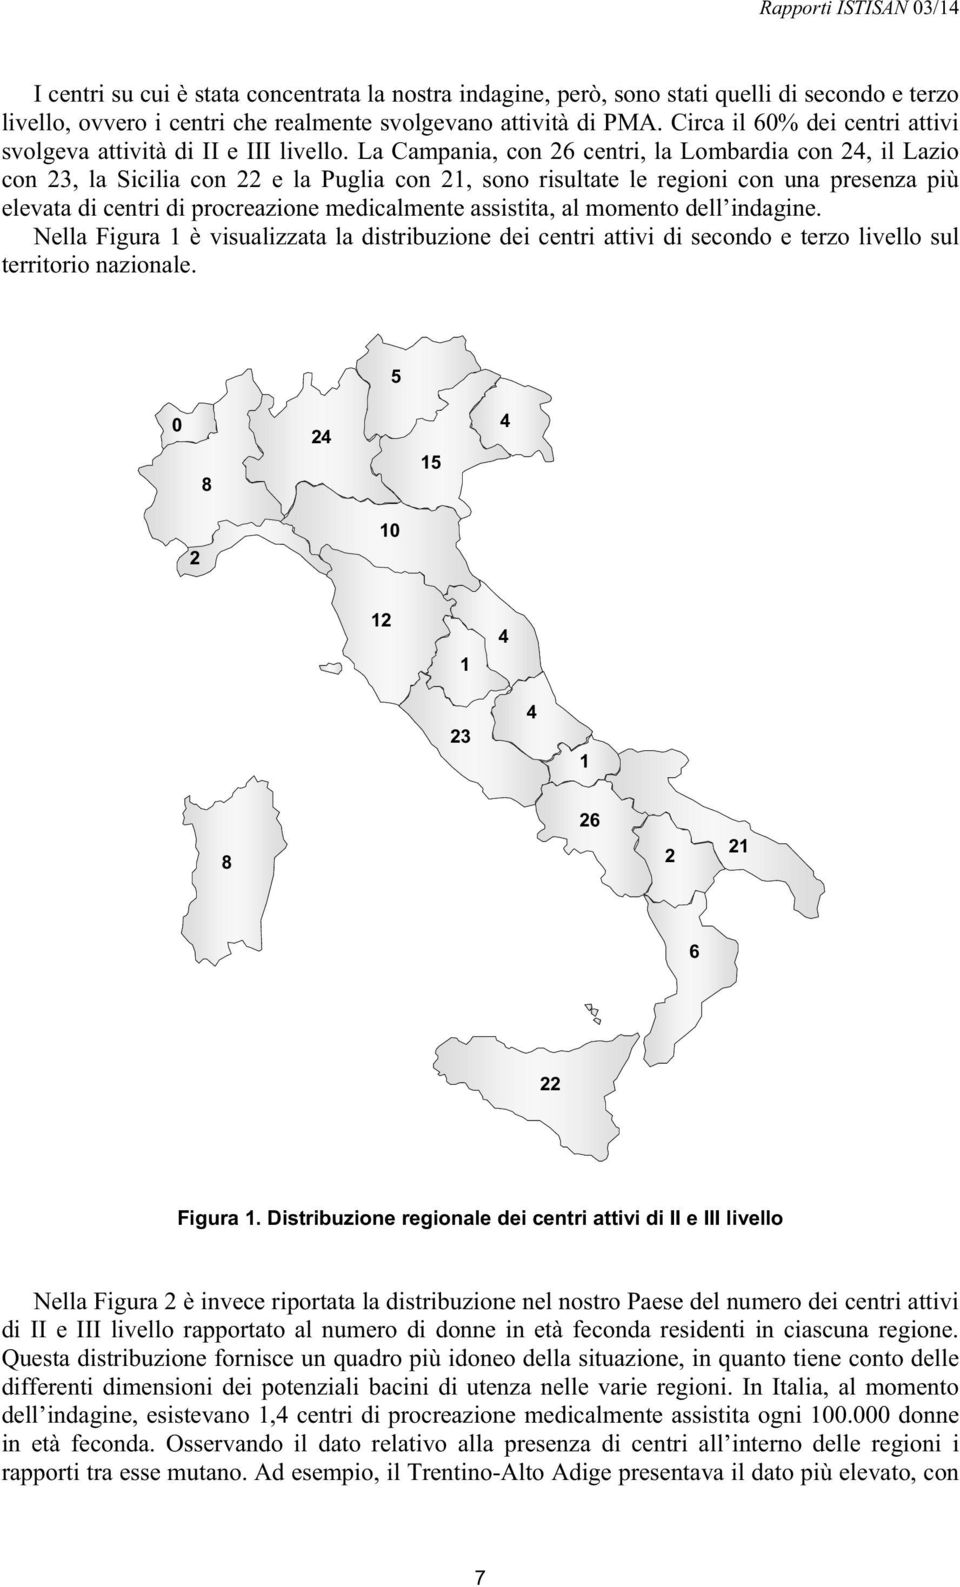 La Campania, con 26 centri, la Lombardia con 24, il Lazio con 23, la Sicilia con 22 e la Puglia con 21, sono risultate le regioni con una presenza più elevata di centri di procreazione medicalmente